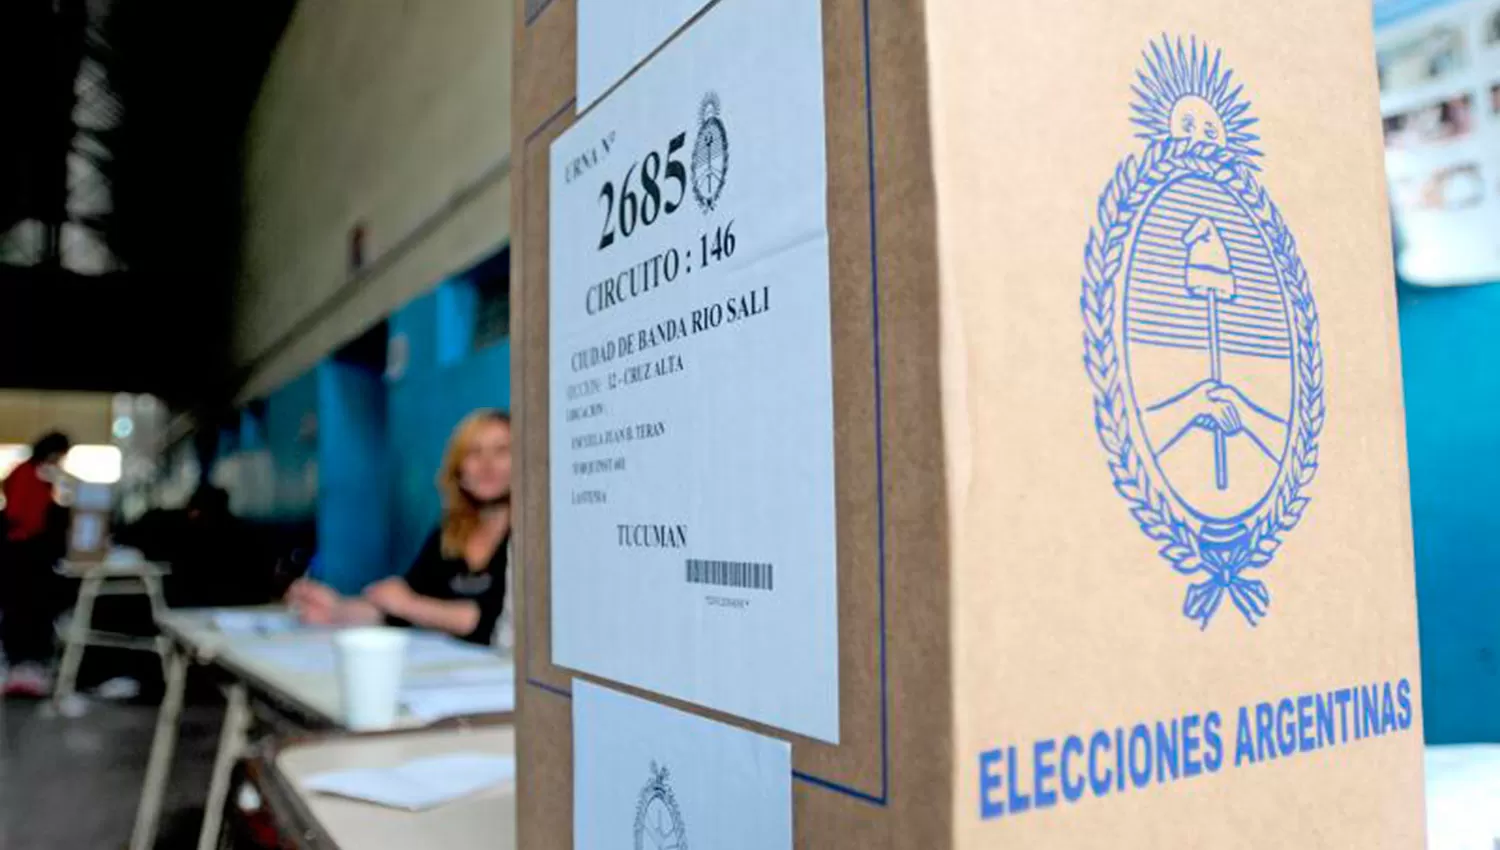 Además de Tucumán, el domingo se vota en otras cuatro provincias